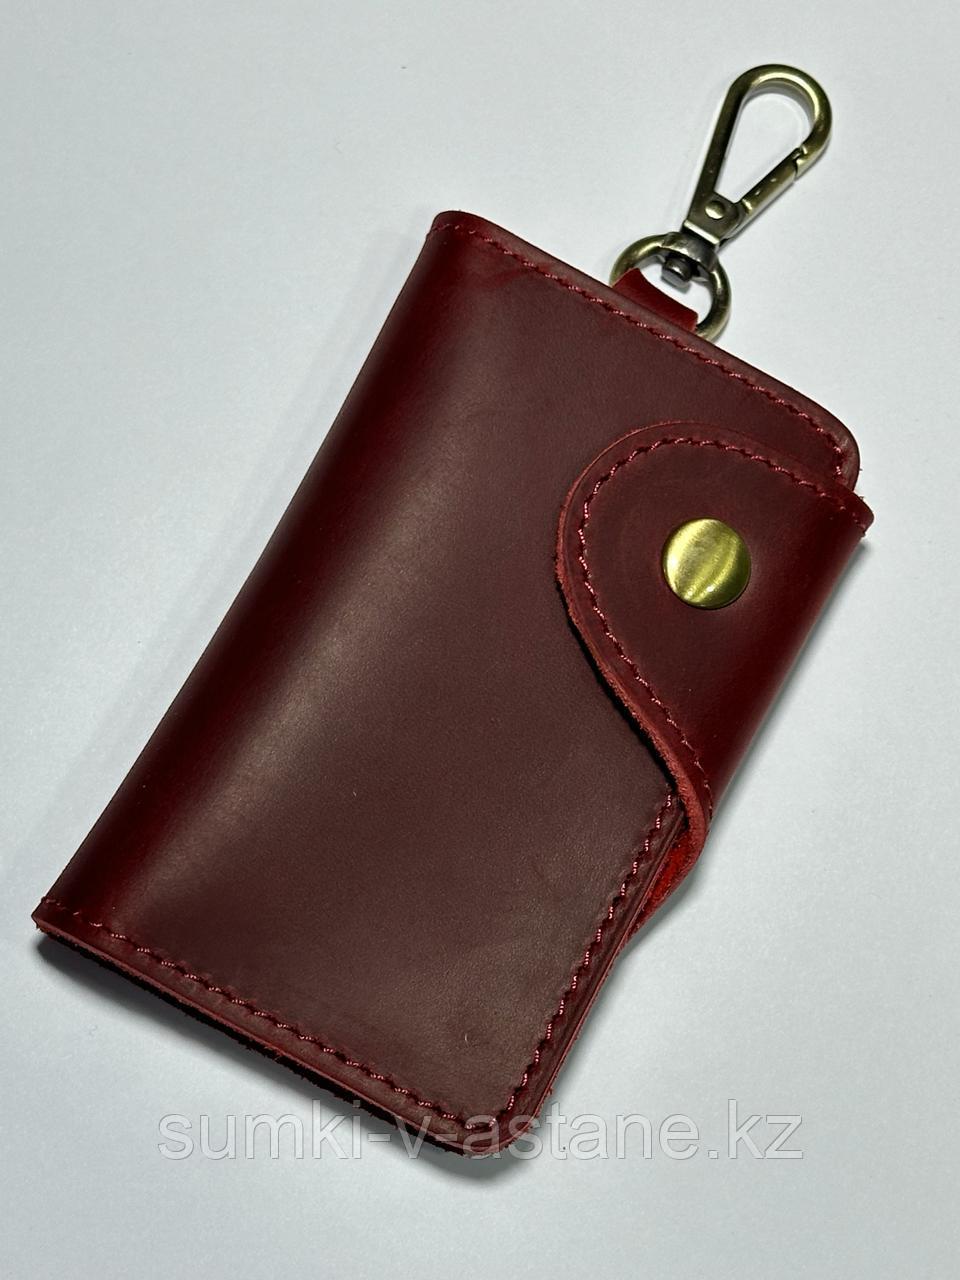 Женская карманная ключница из кожи, отсек для пластиковых карт. Размер: 11.5 # 7 см.